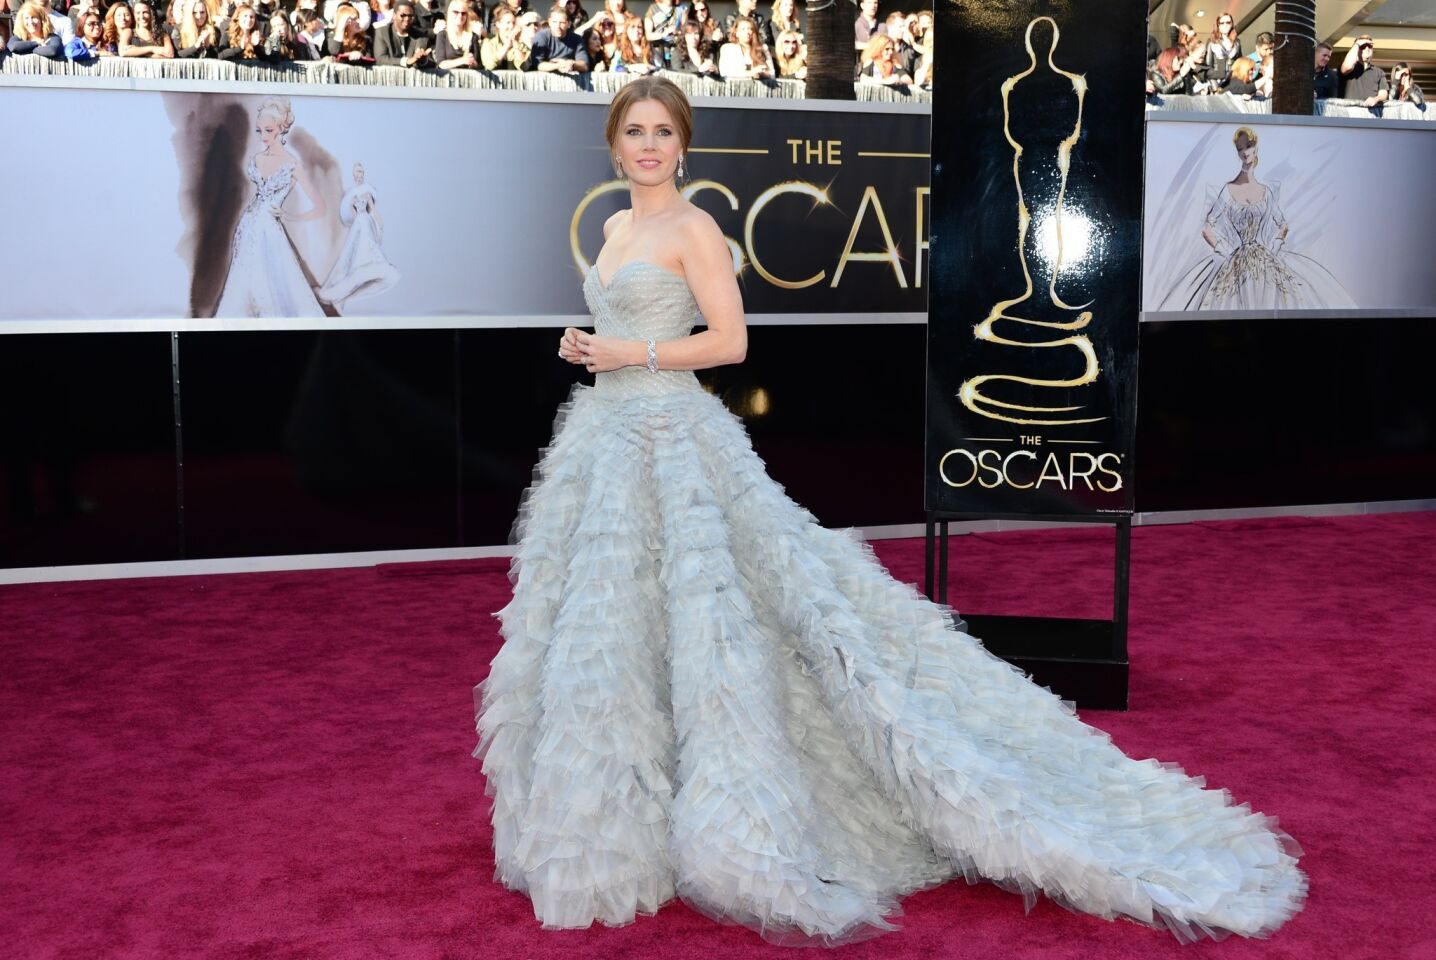 Oscars 2013 arrivals: Amy Adams